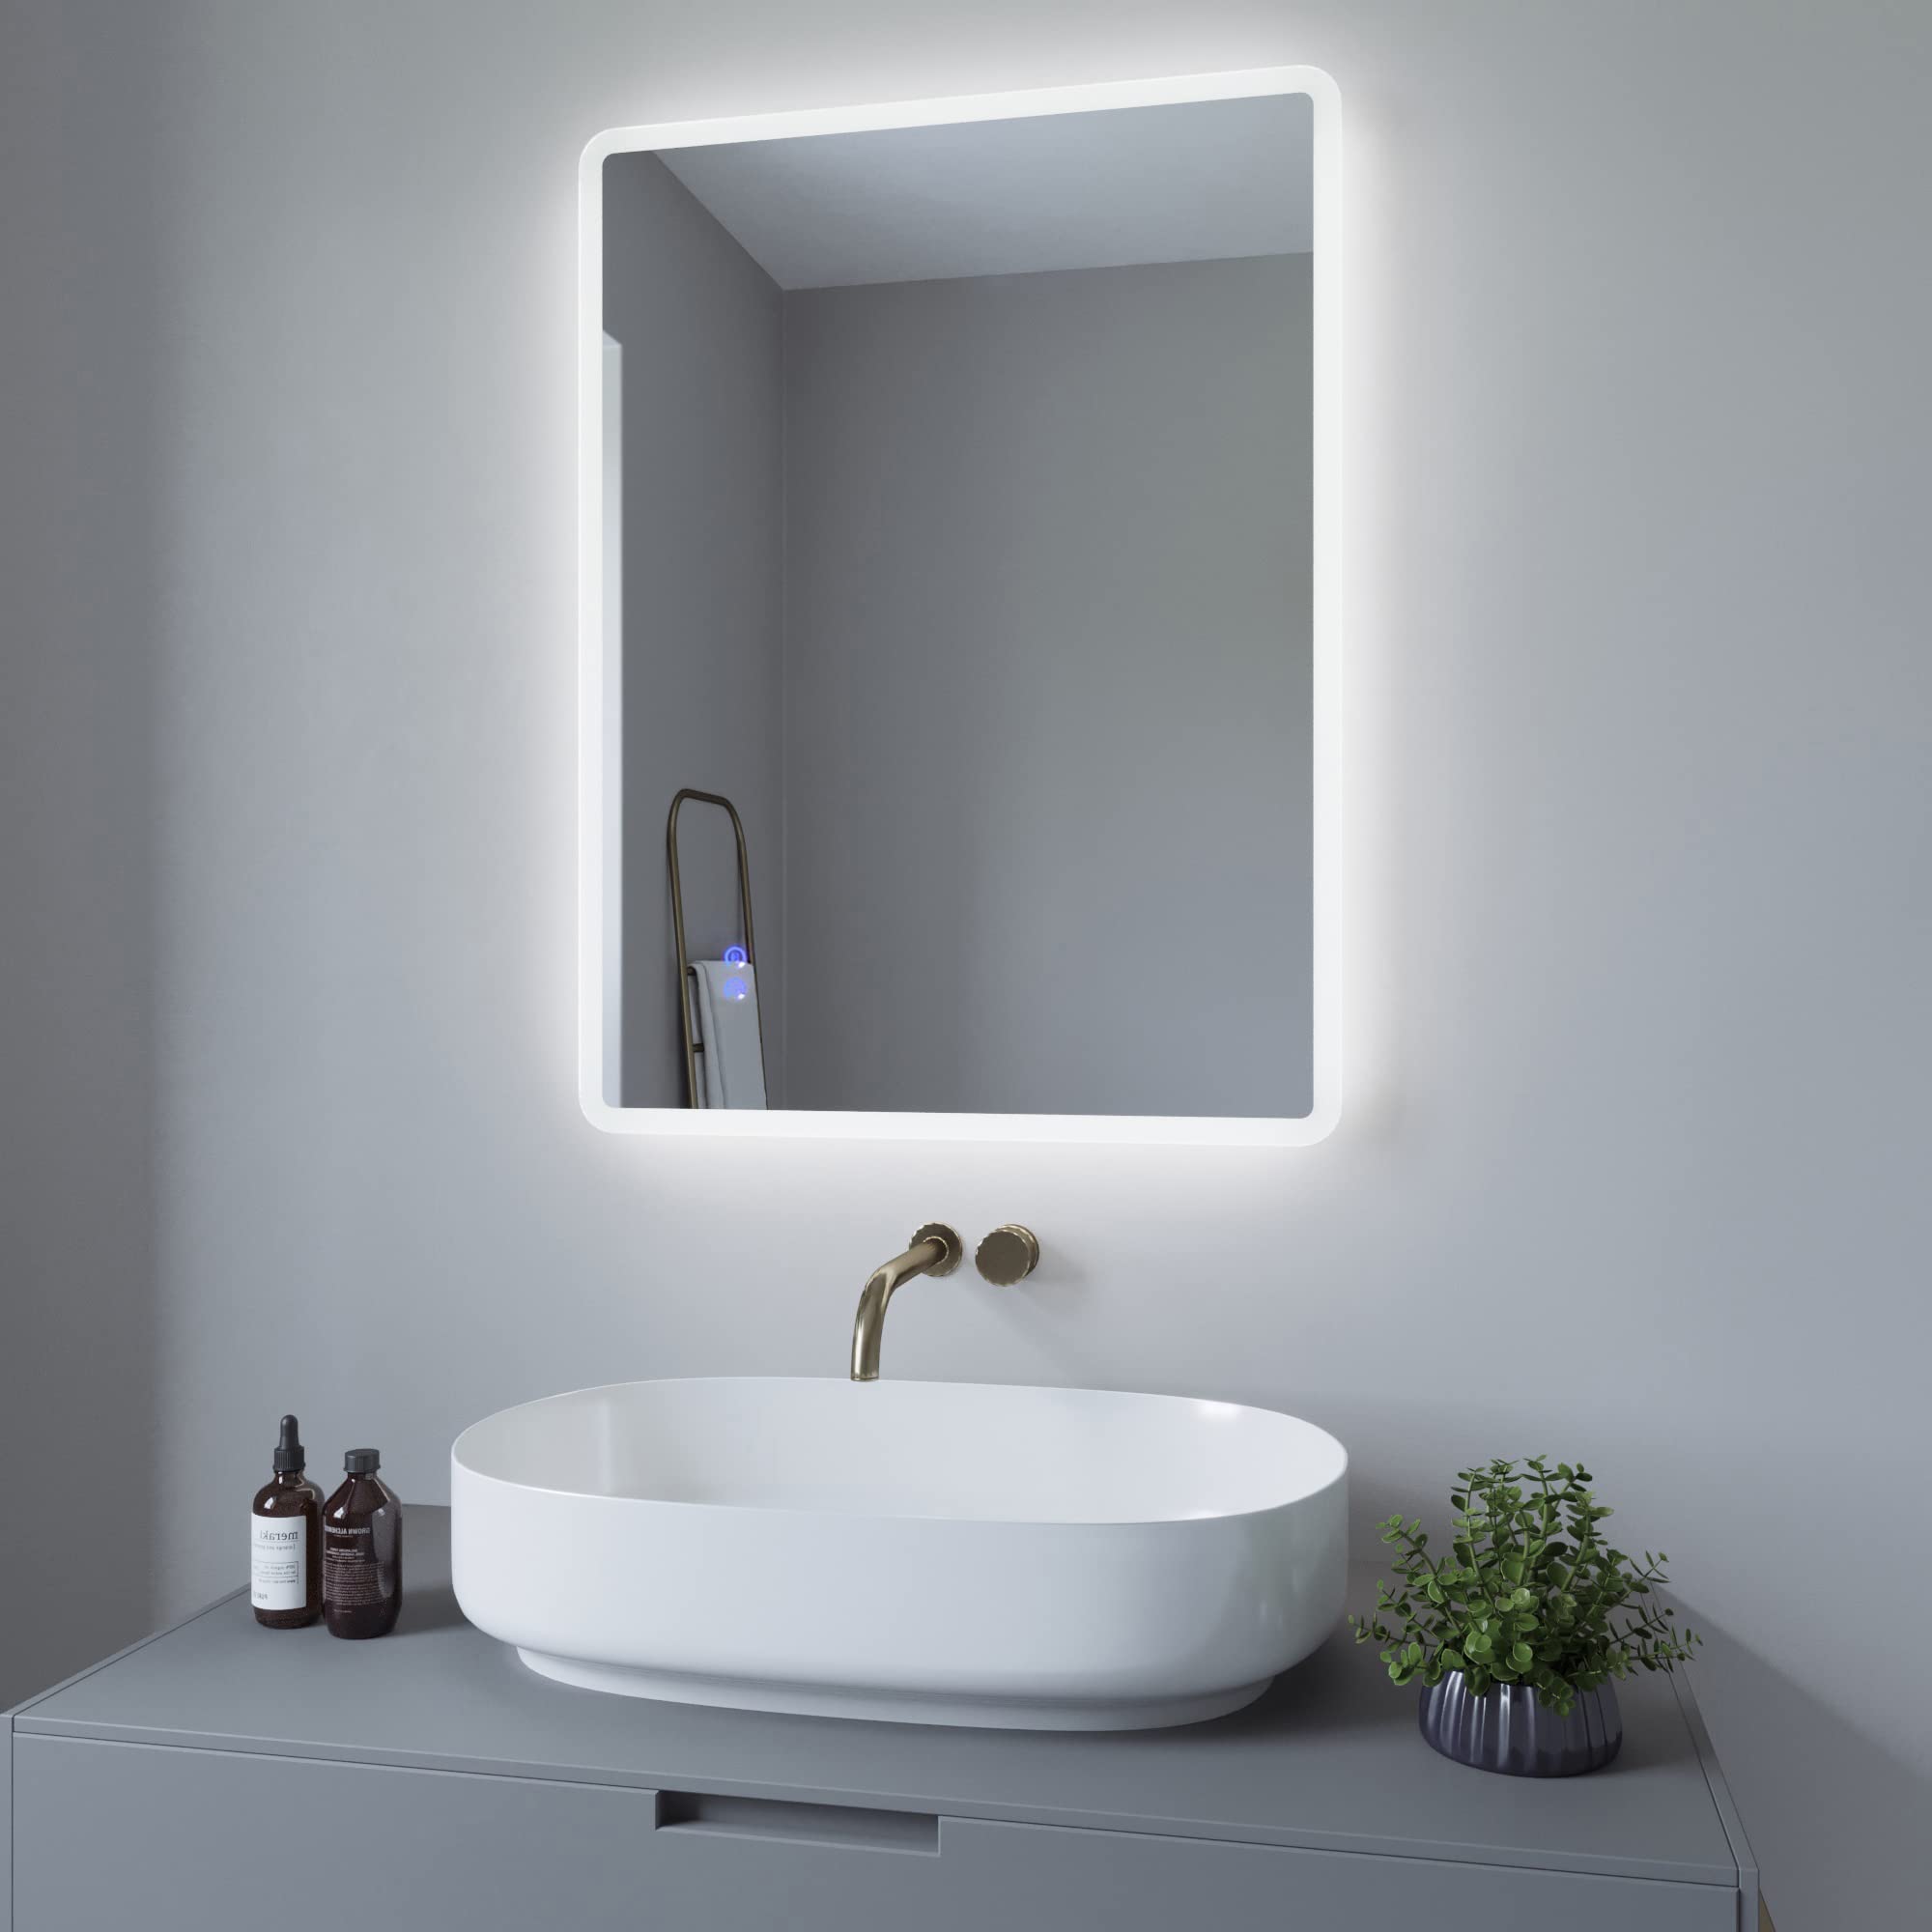 AQUABATOS 80x60cm Badspiegel mit Beleuchtung badezimmerspiegel LED Lichtspiegel Wandspiegel, Touch-Schalter Dimmbar, Kaltweiß 6400K, Spiegelheizung, Anti-beschlag, IP44, CE